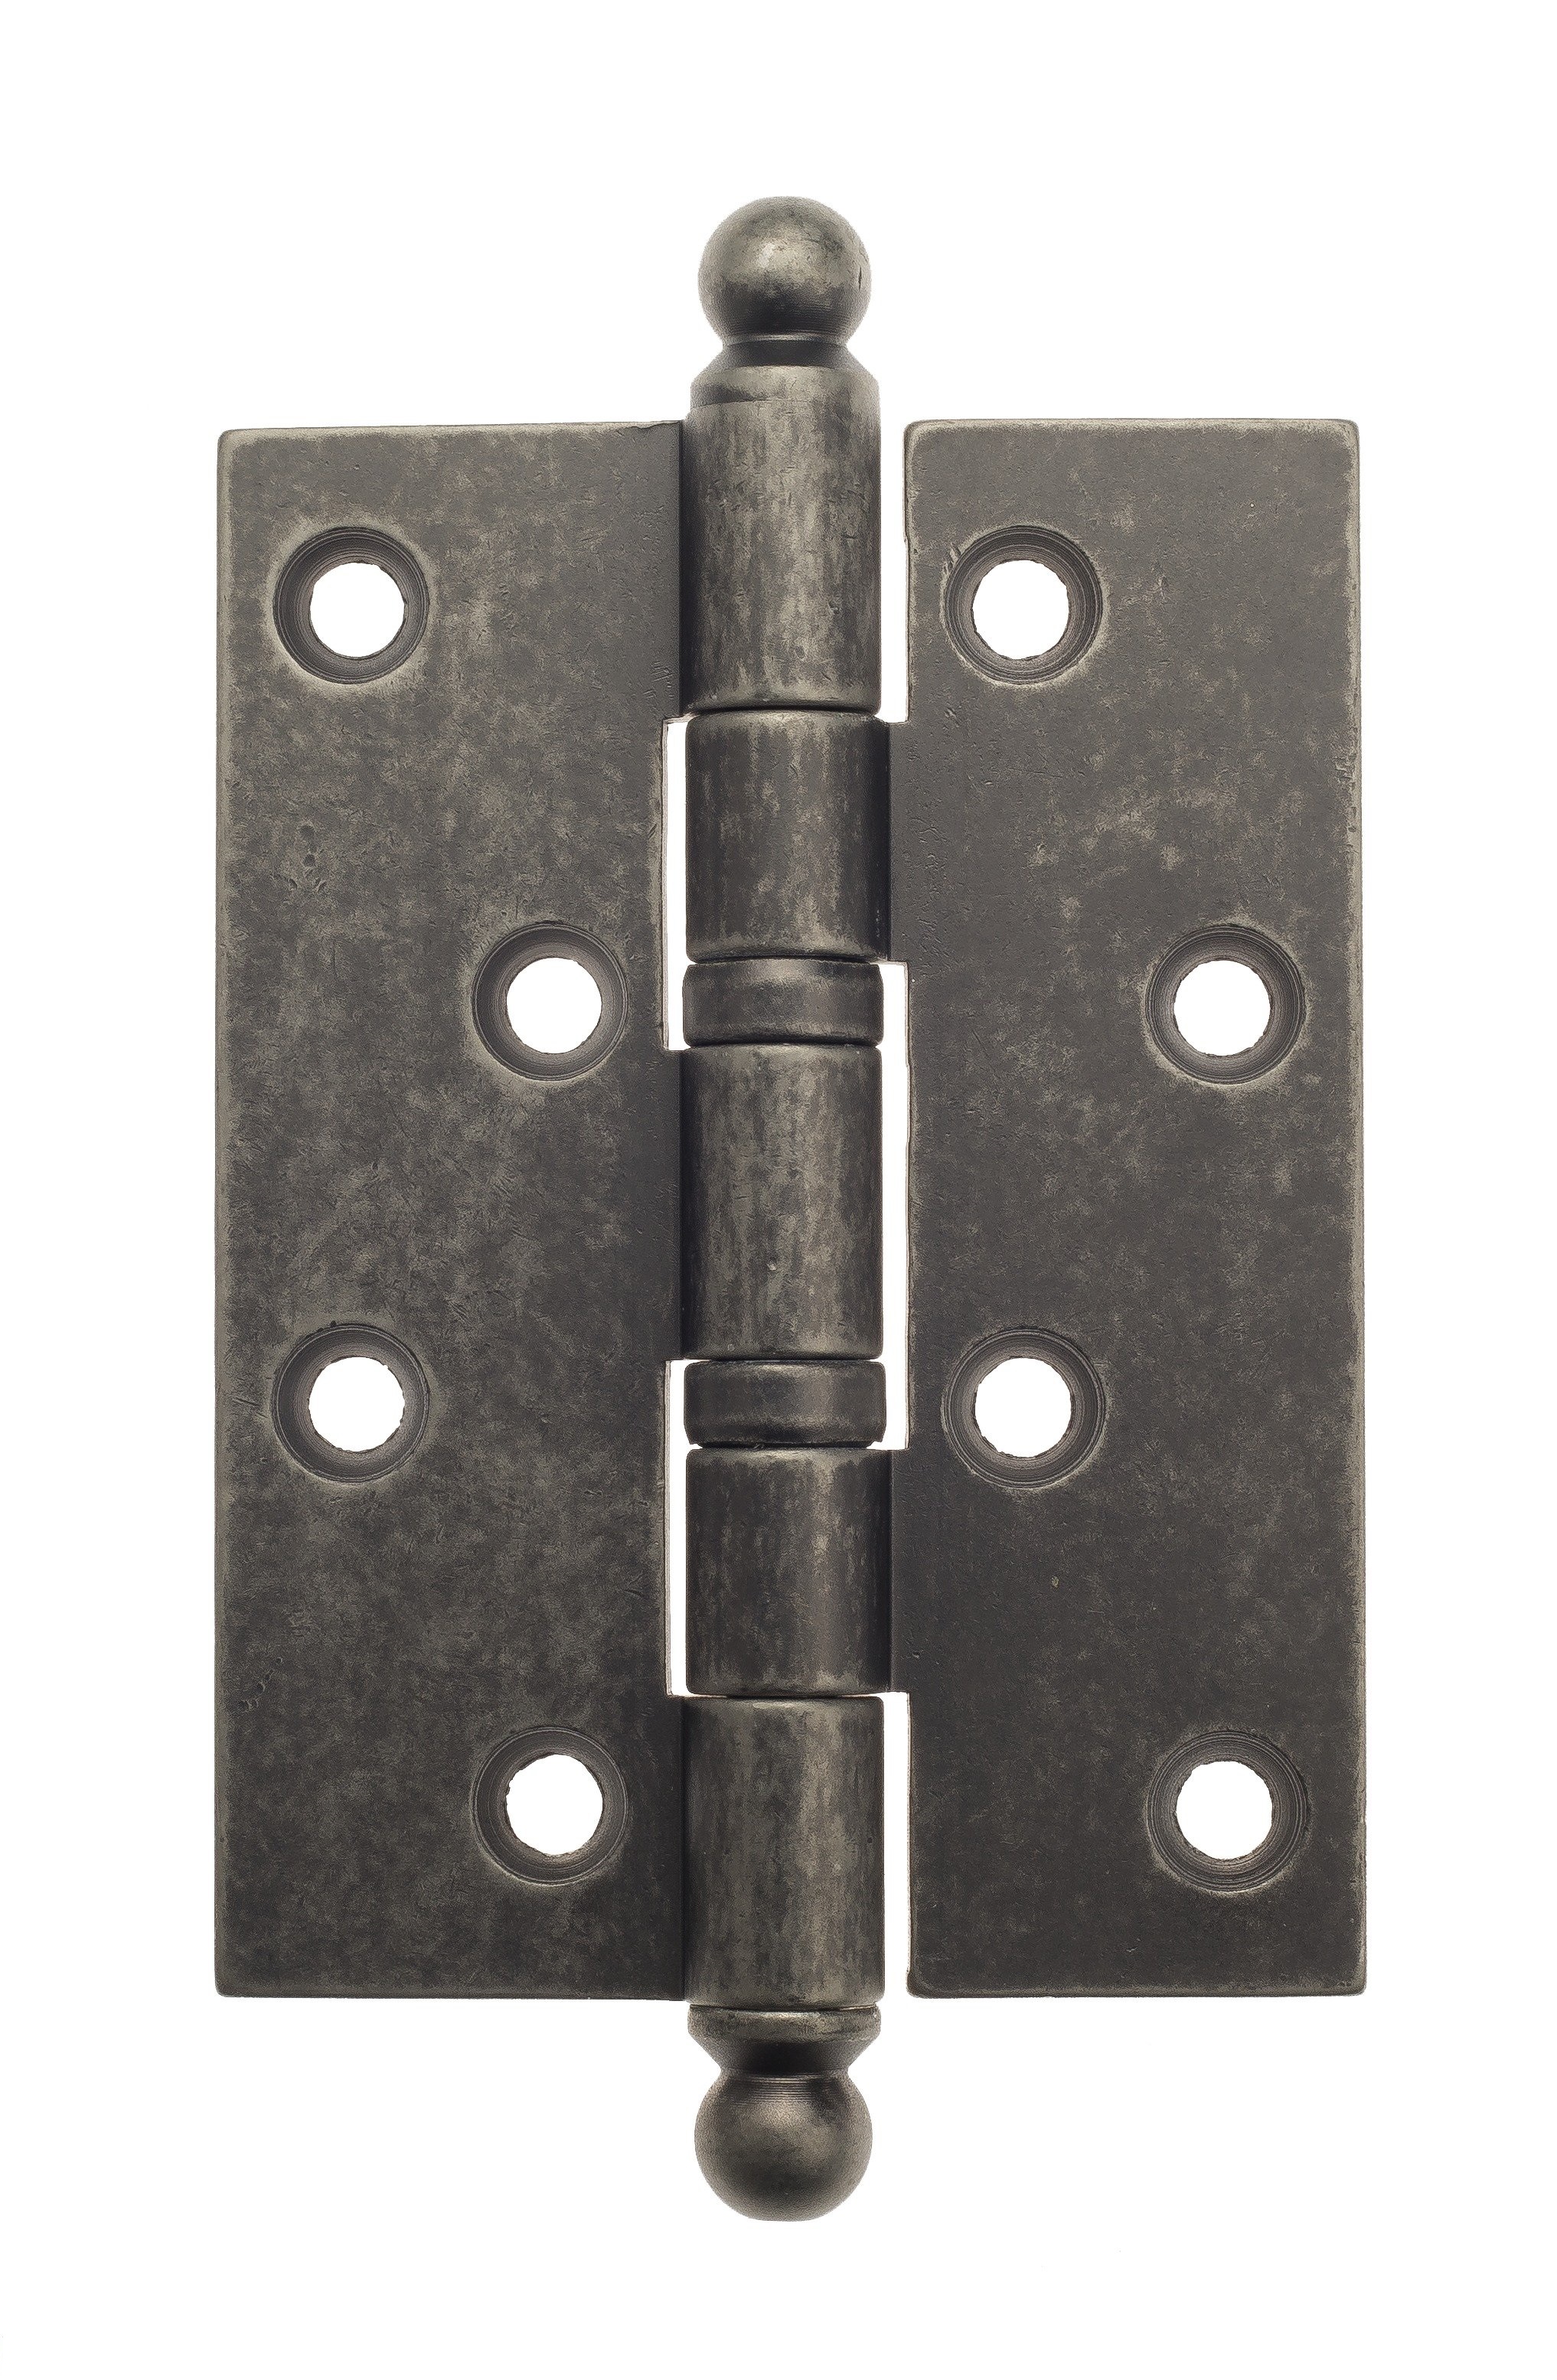 Петля дверная универсальная стальная с декор колпачком Aldeghi 136FA403 102x76x3 ант. серебро